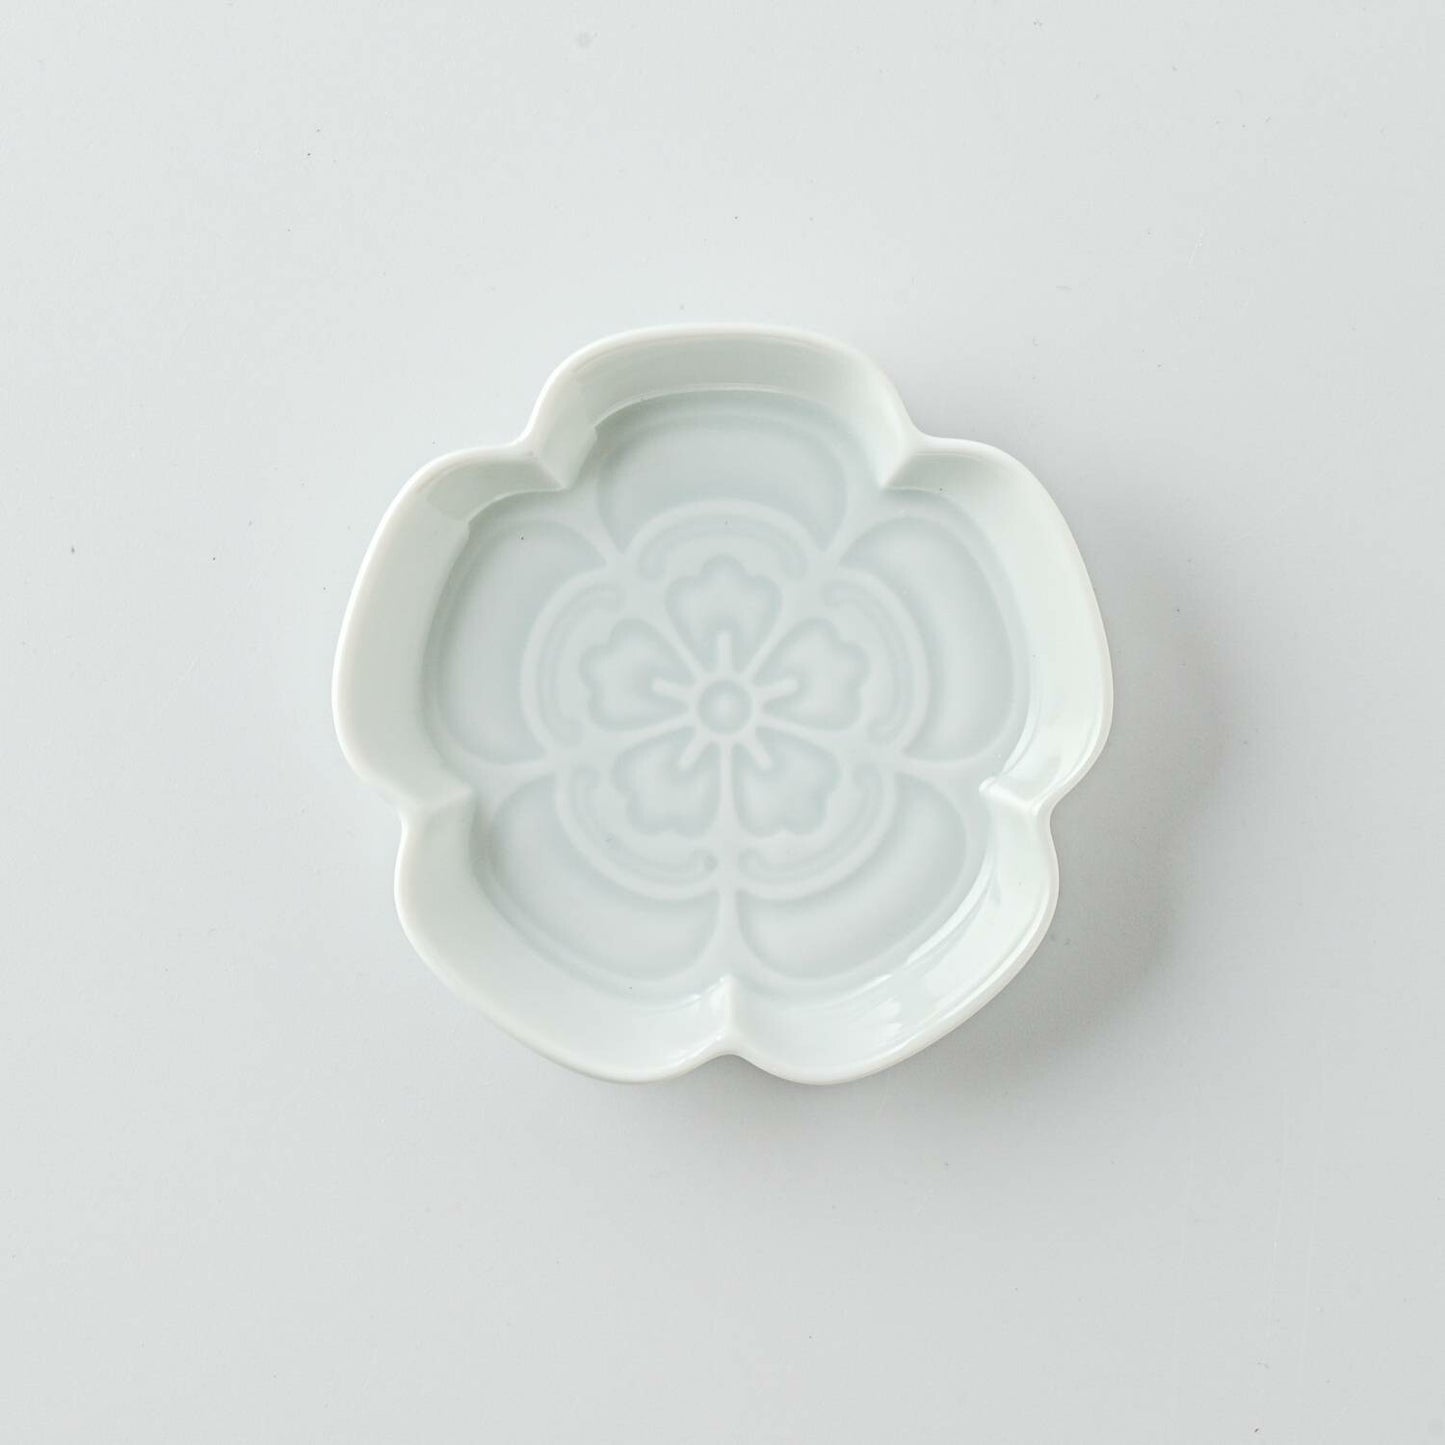 Mino Porcelain "Gaku" Line Engraving Mamezara